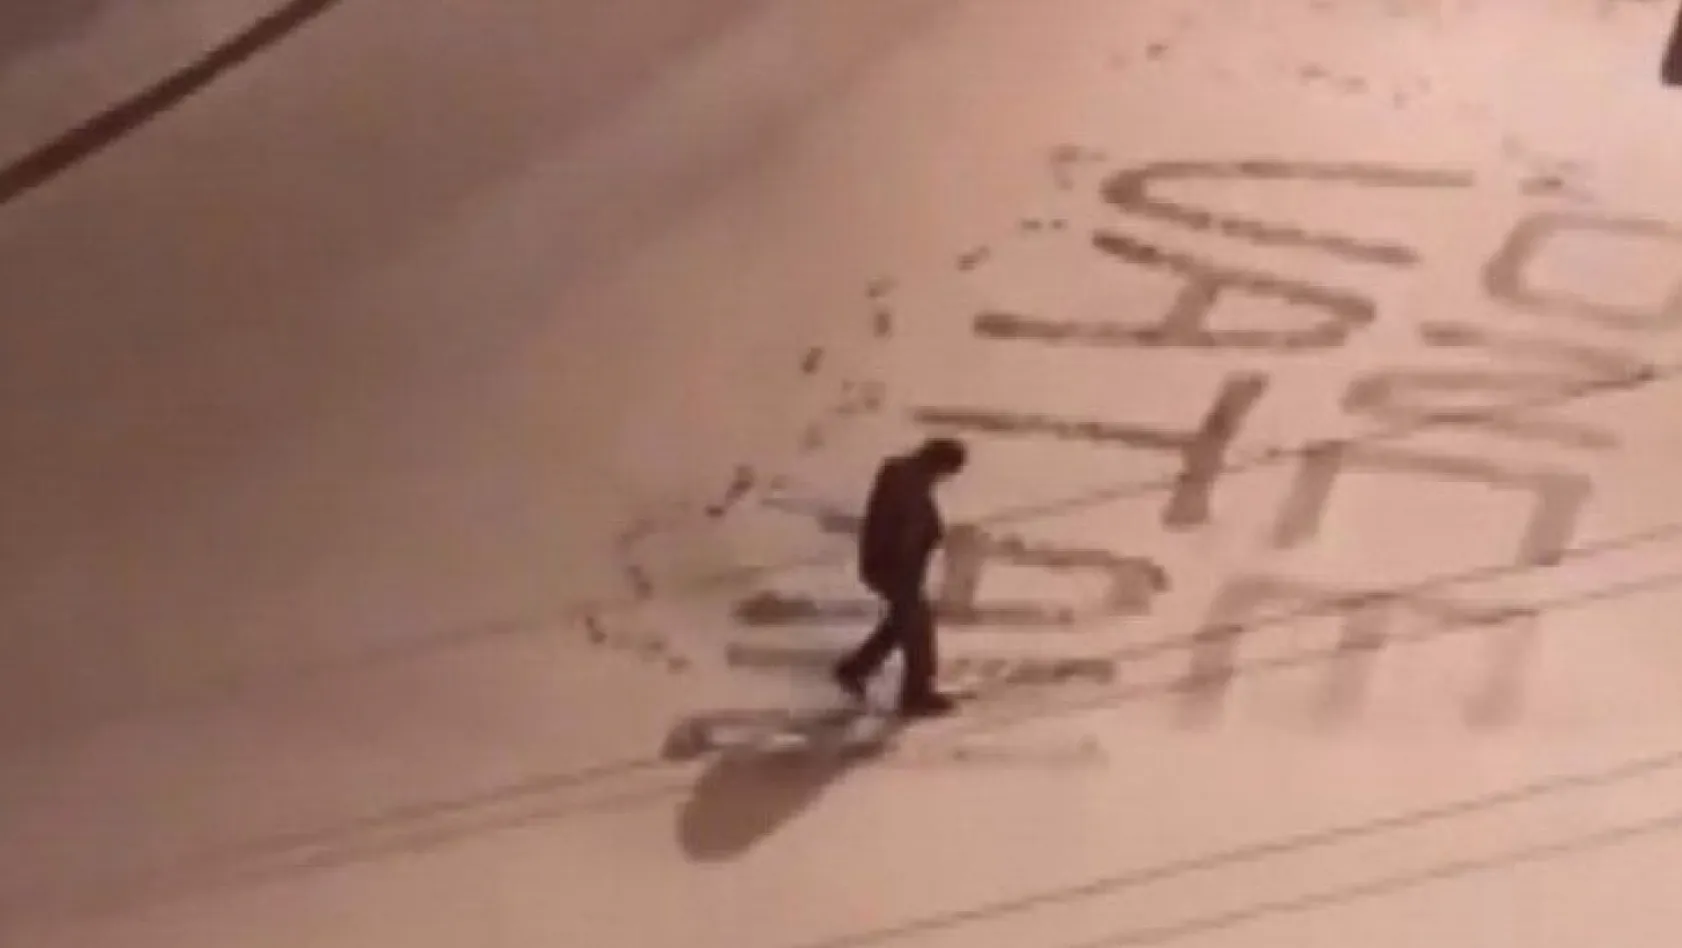 Polis memuru vatan sevgisini karla kaplı yola yazdı